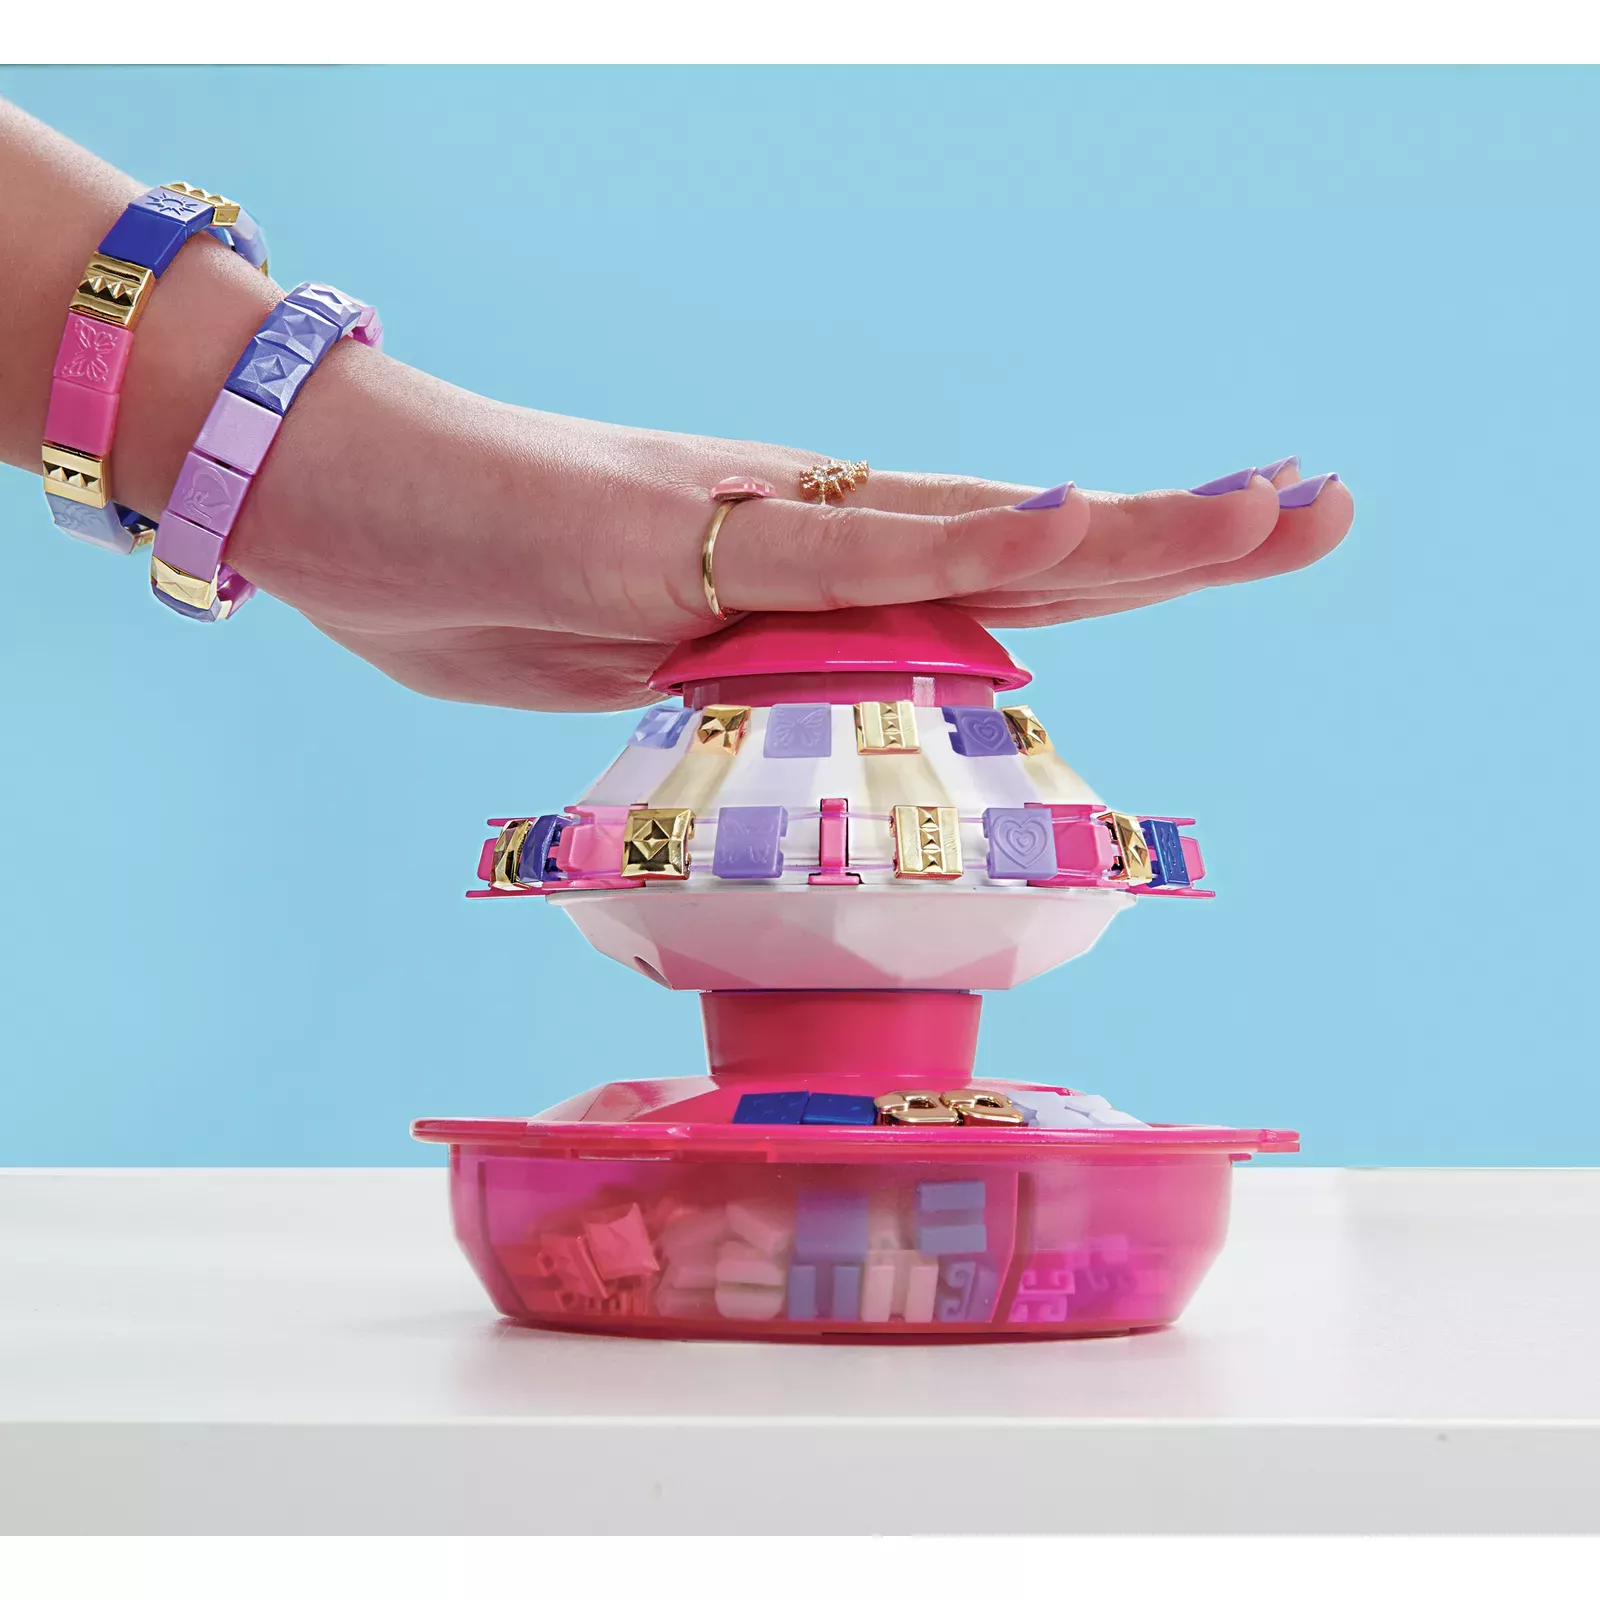 Bracelet Making Kit for Girls, DIY Friendship Arts and Crafts Toys